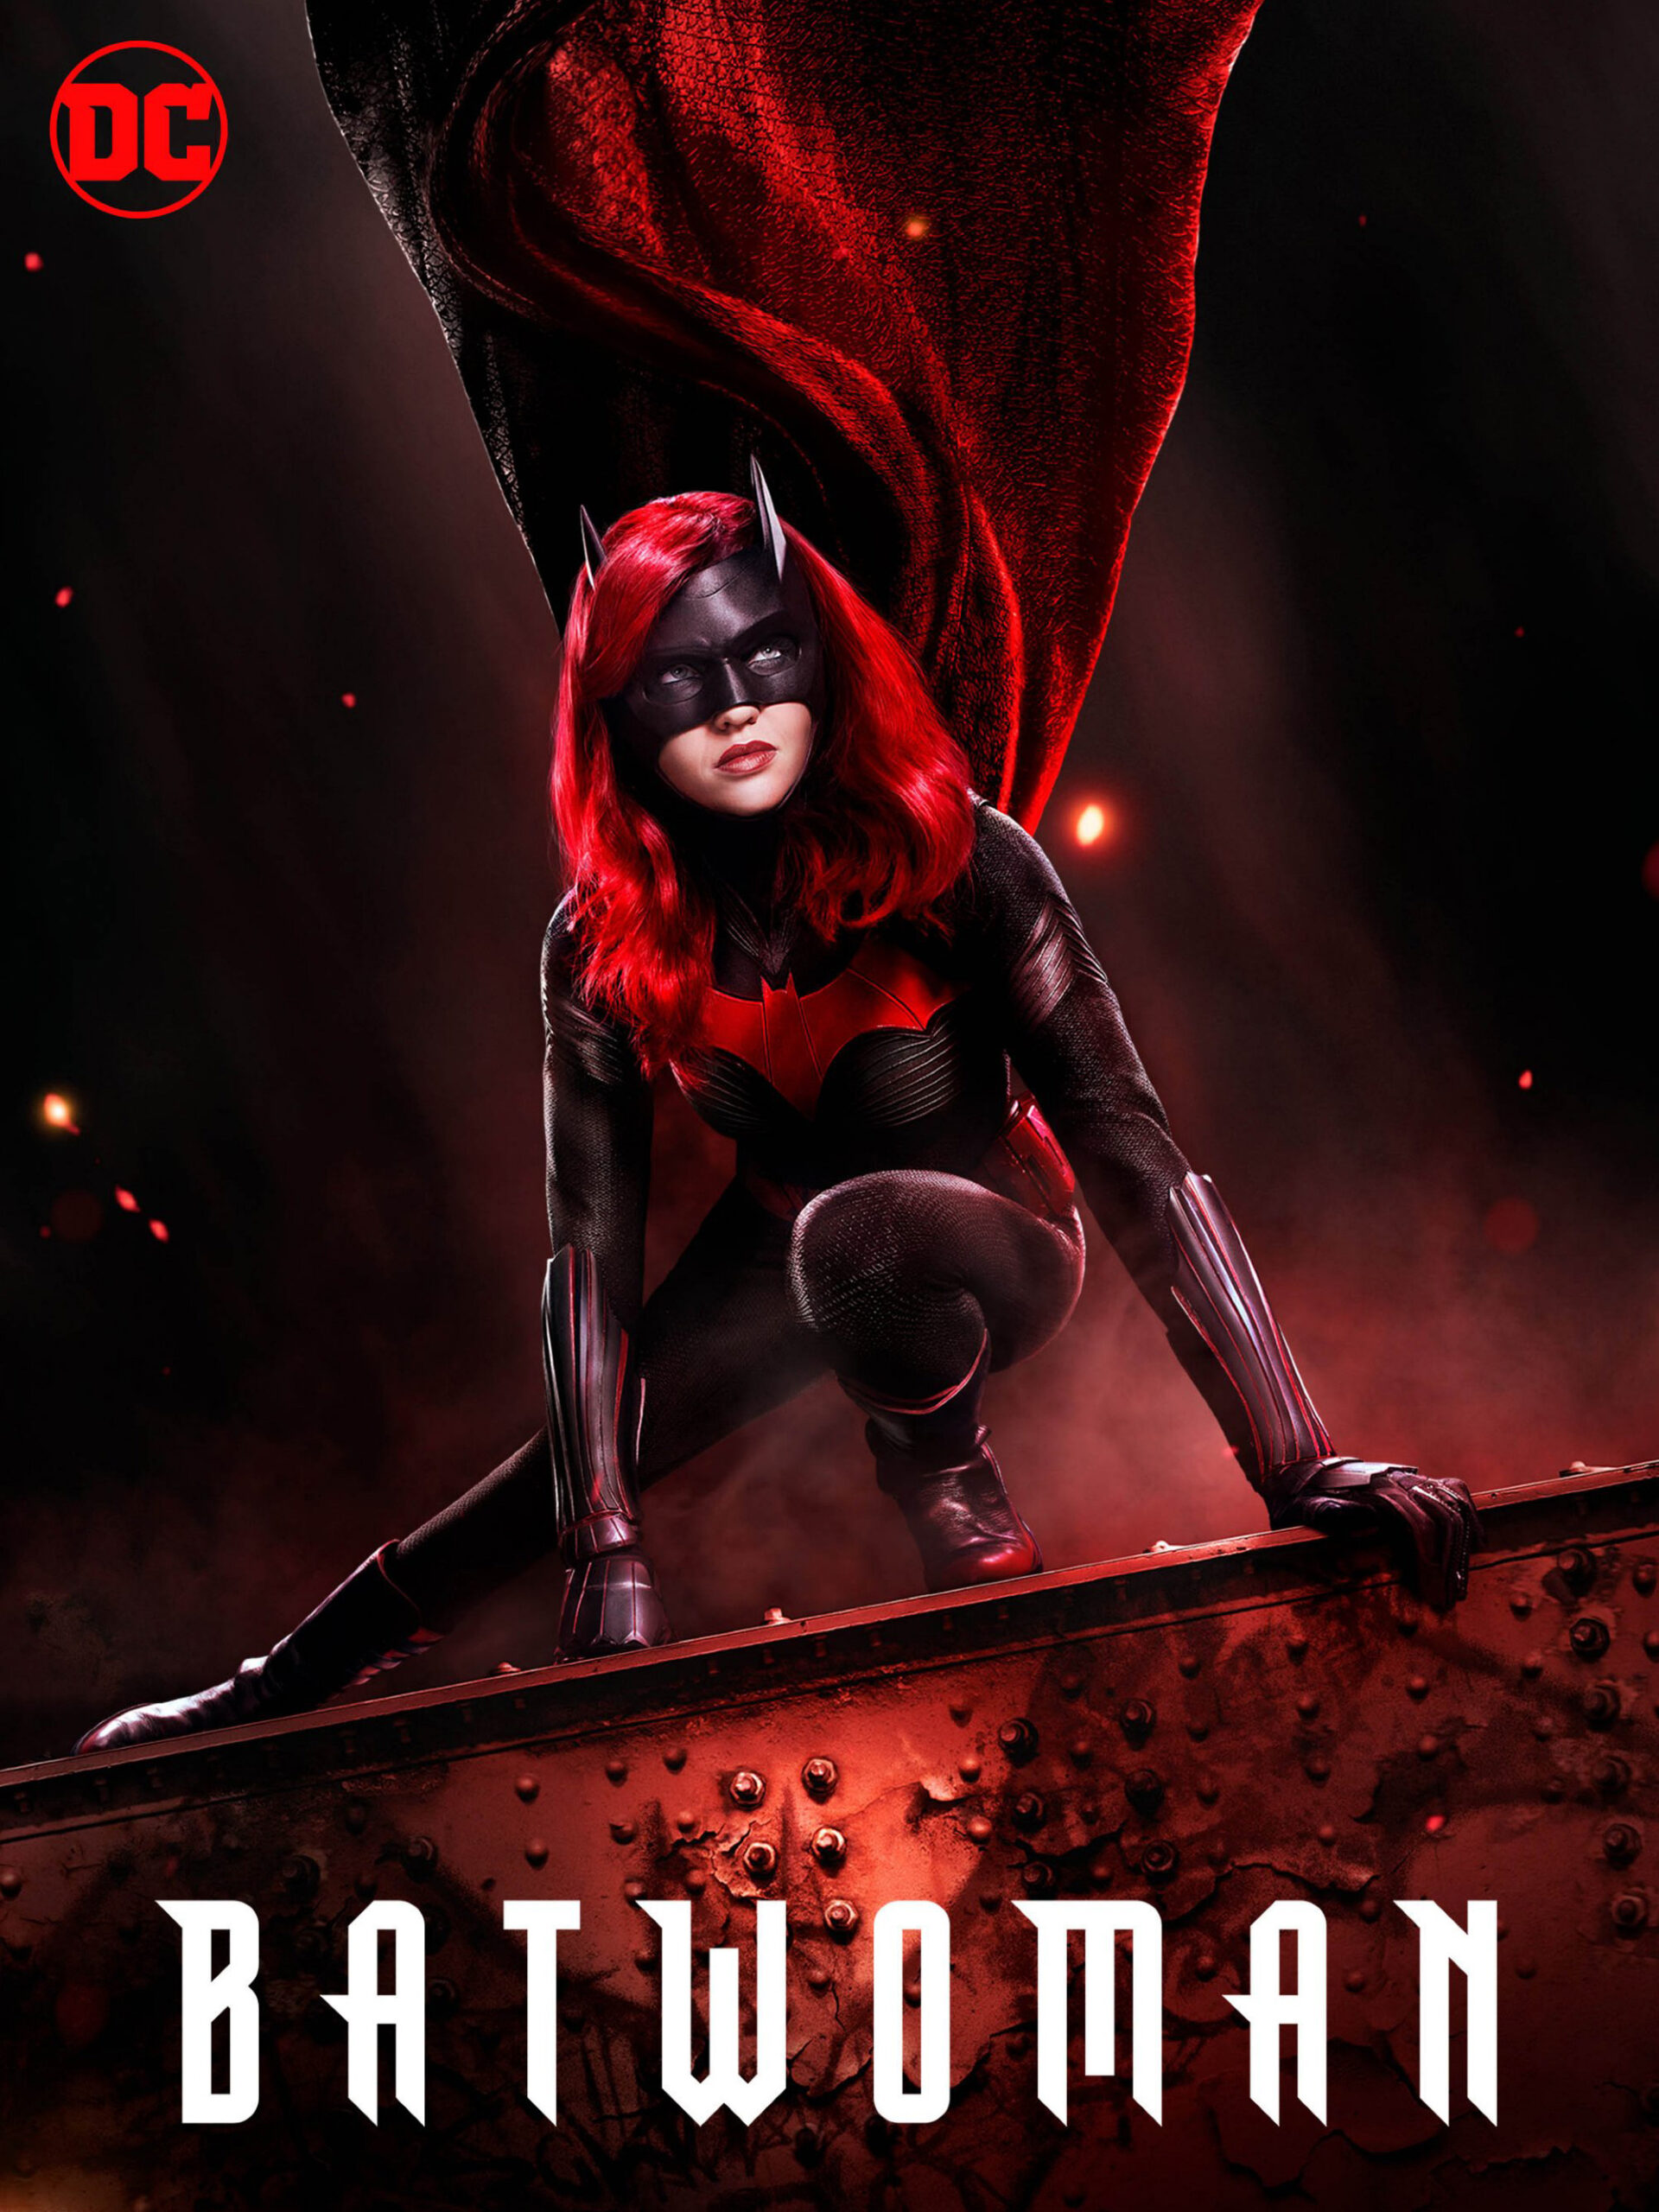 ดูหนังออนไลน์ฟรี Batwoman Season 1 (2019) EP.16 แบทวูแมน ซีซั่น 1 ตอนที่ 19 (Soundtrack)